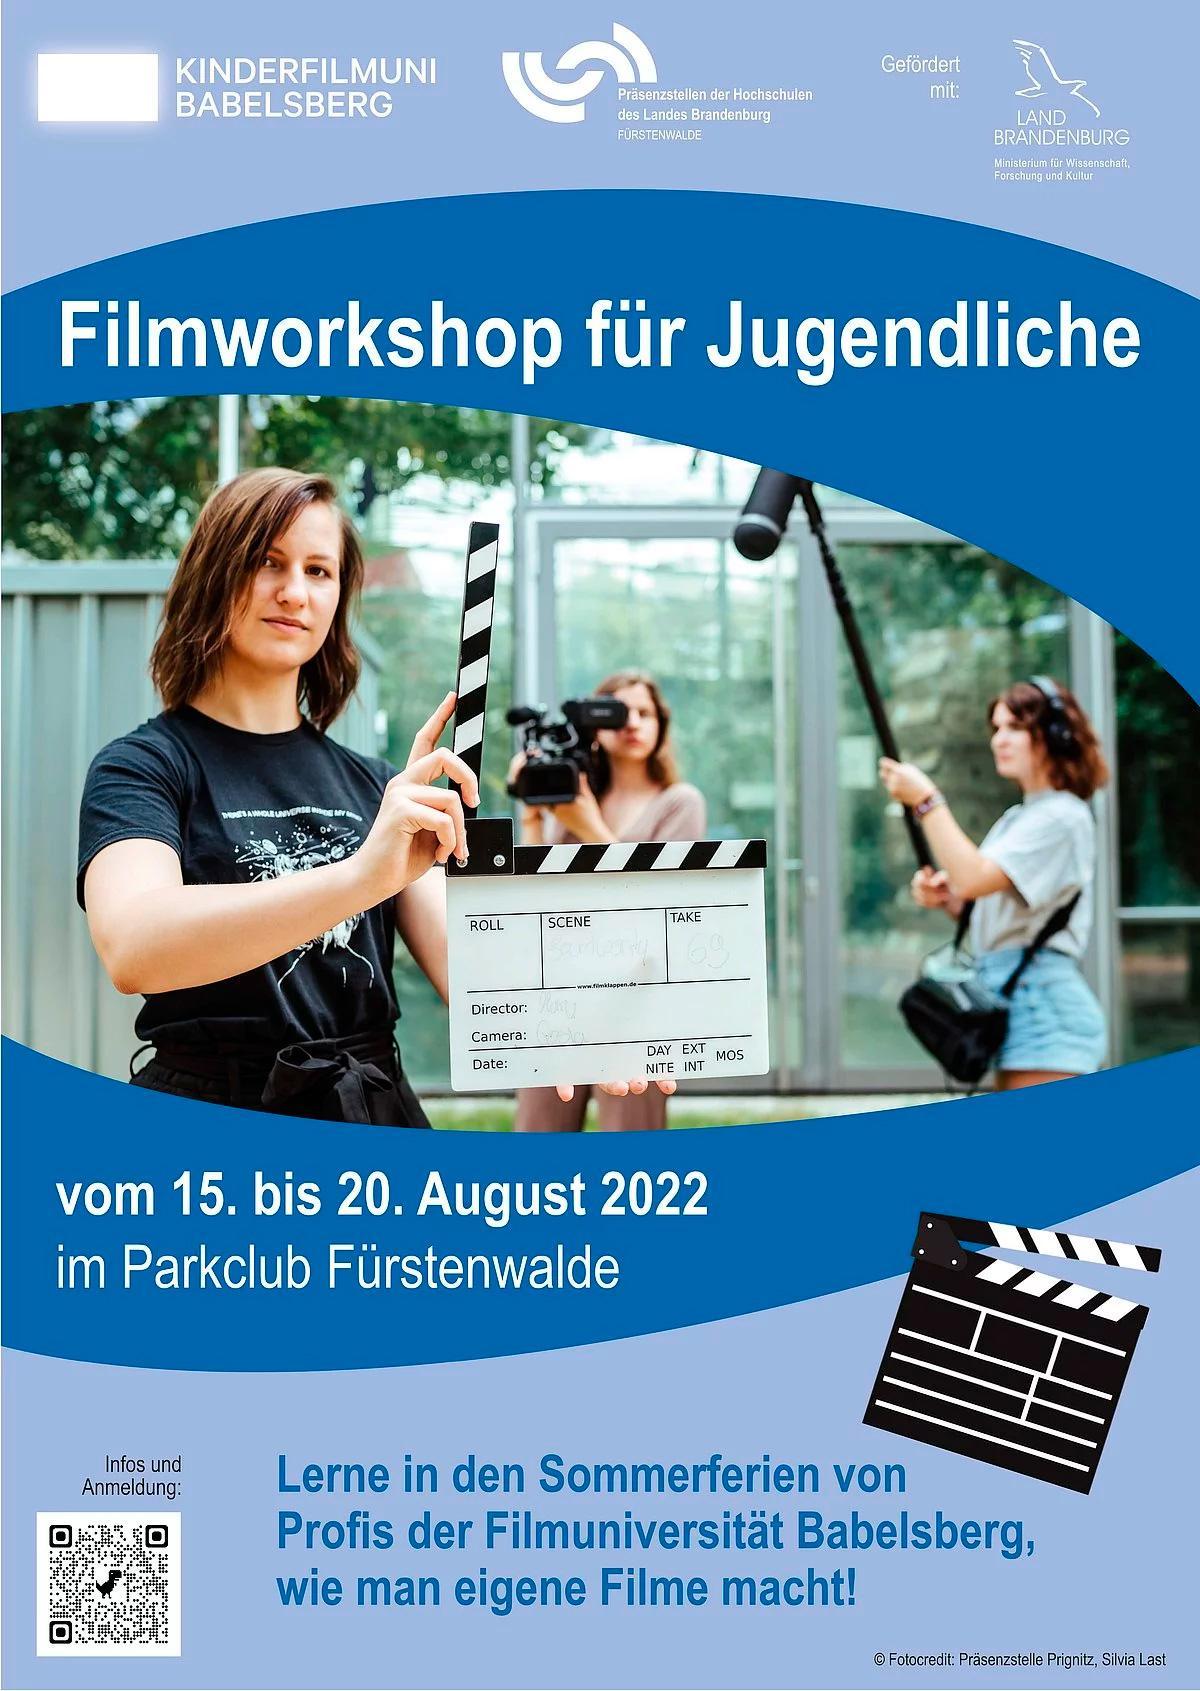 Filmworkshop im Parkclub Fürstenwalde